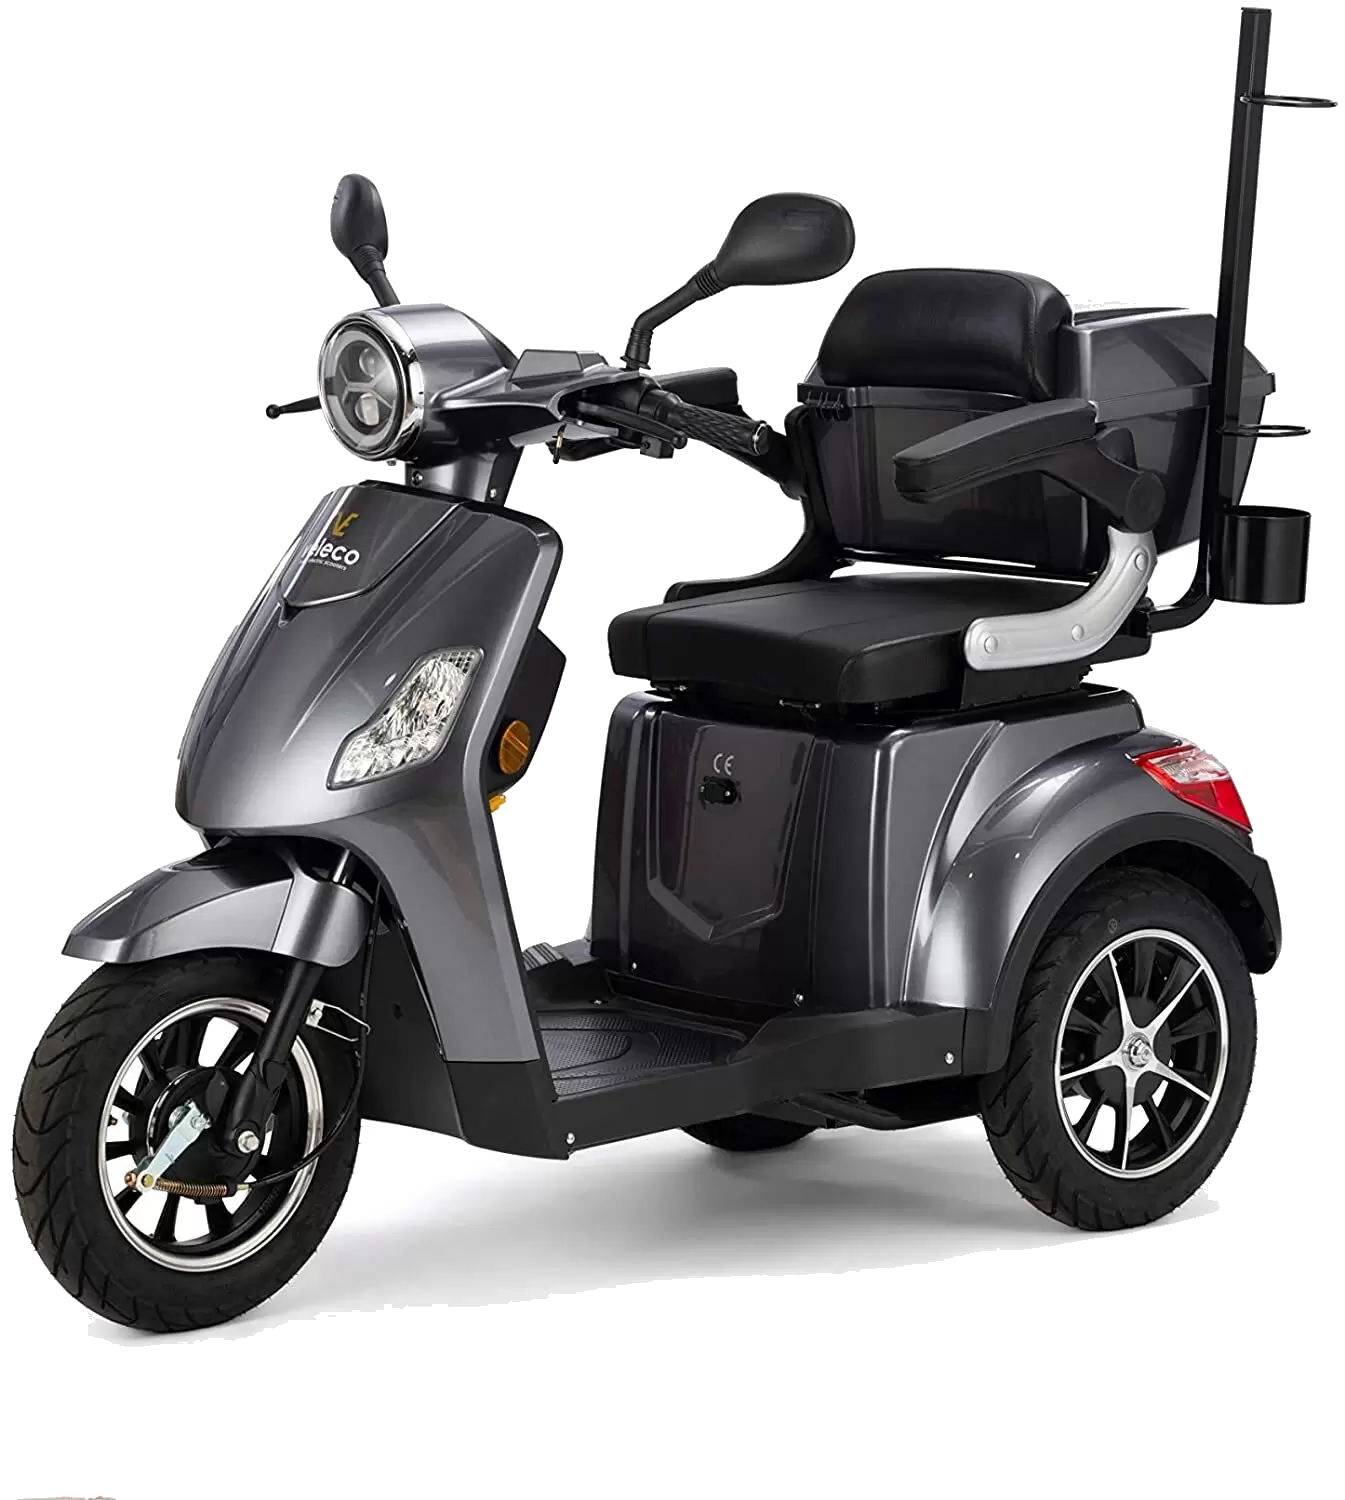 Scooter electrico Veleco Draco de 3 ruedas para minusvalidos o personas mayores hasta 25km/h